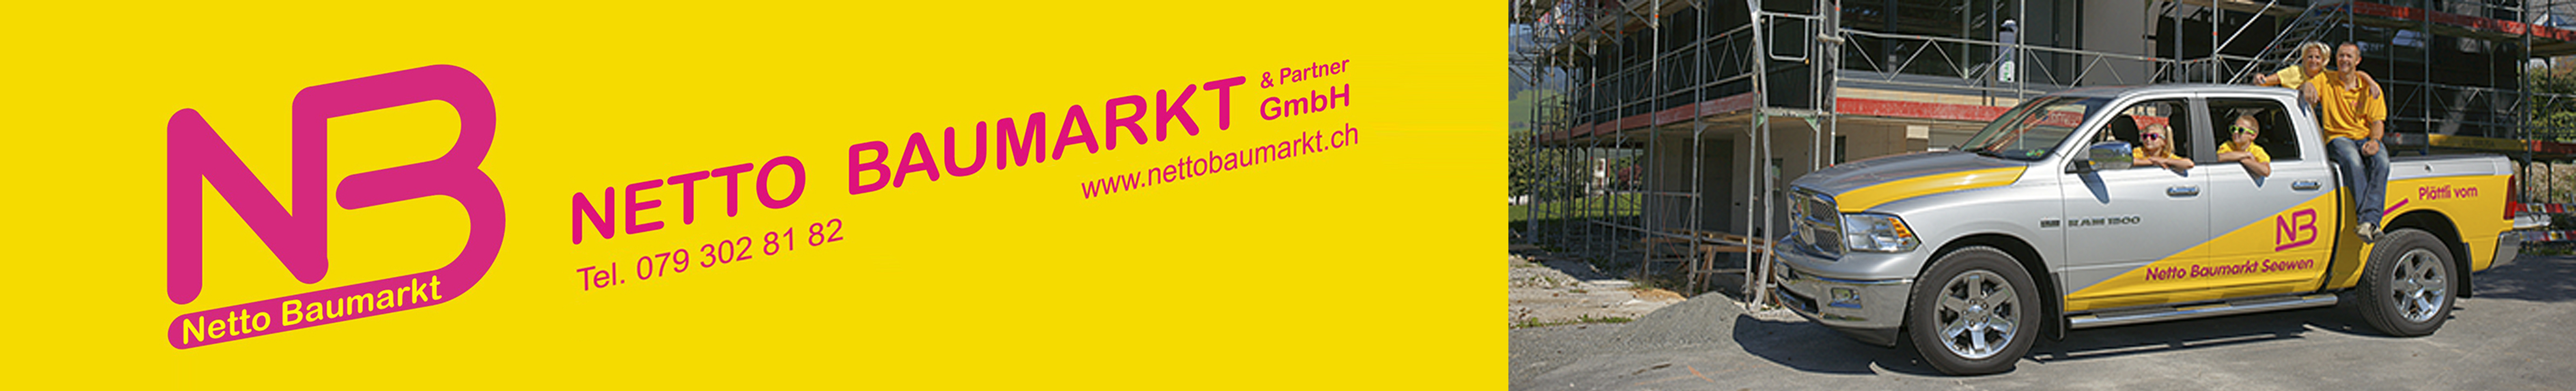 Netto Baumarkt & Partner GmbH